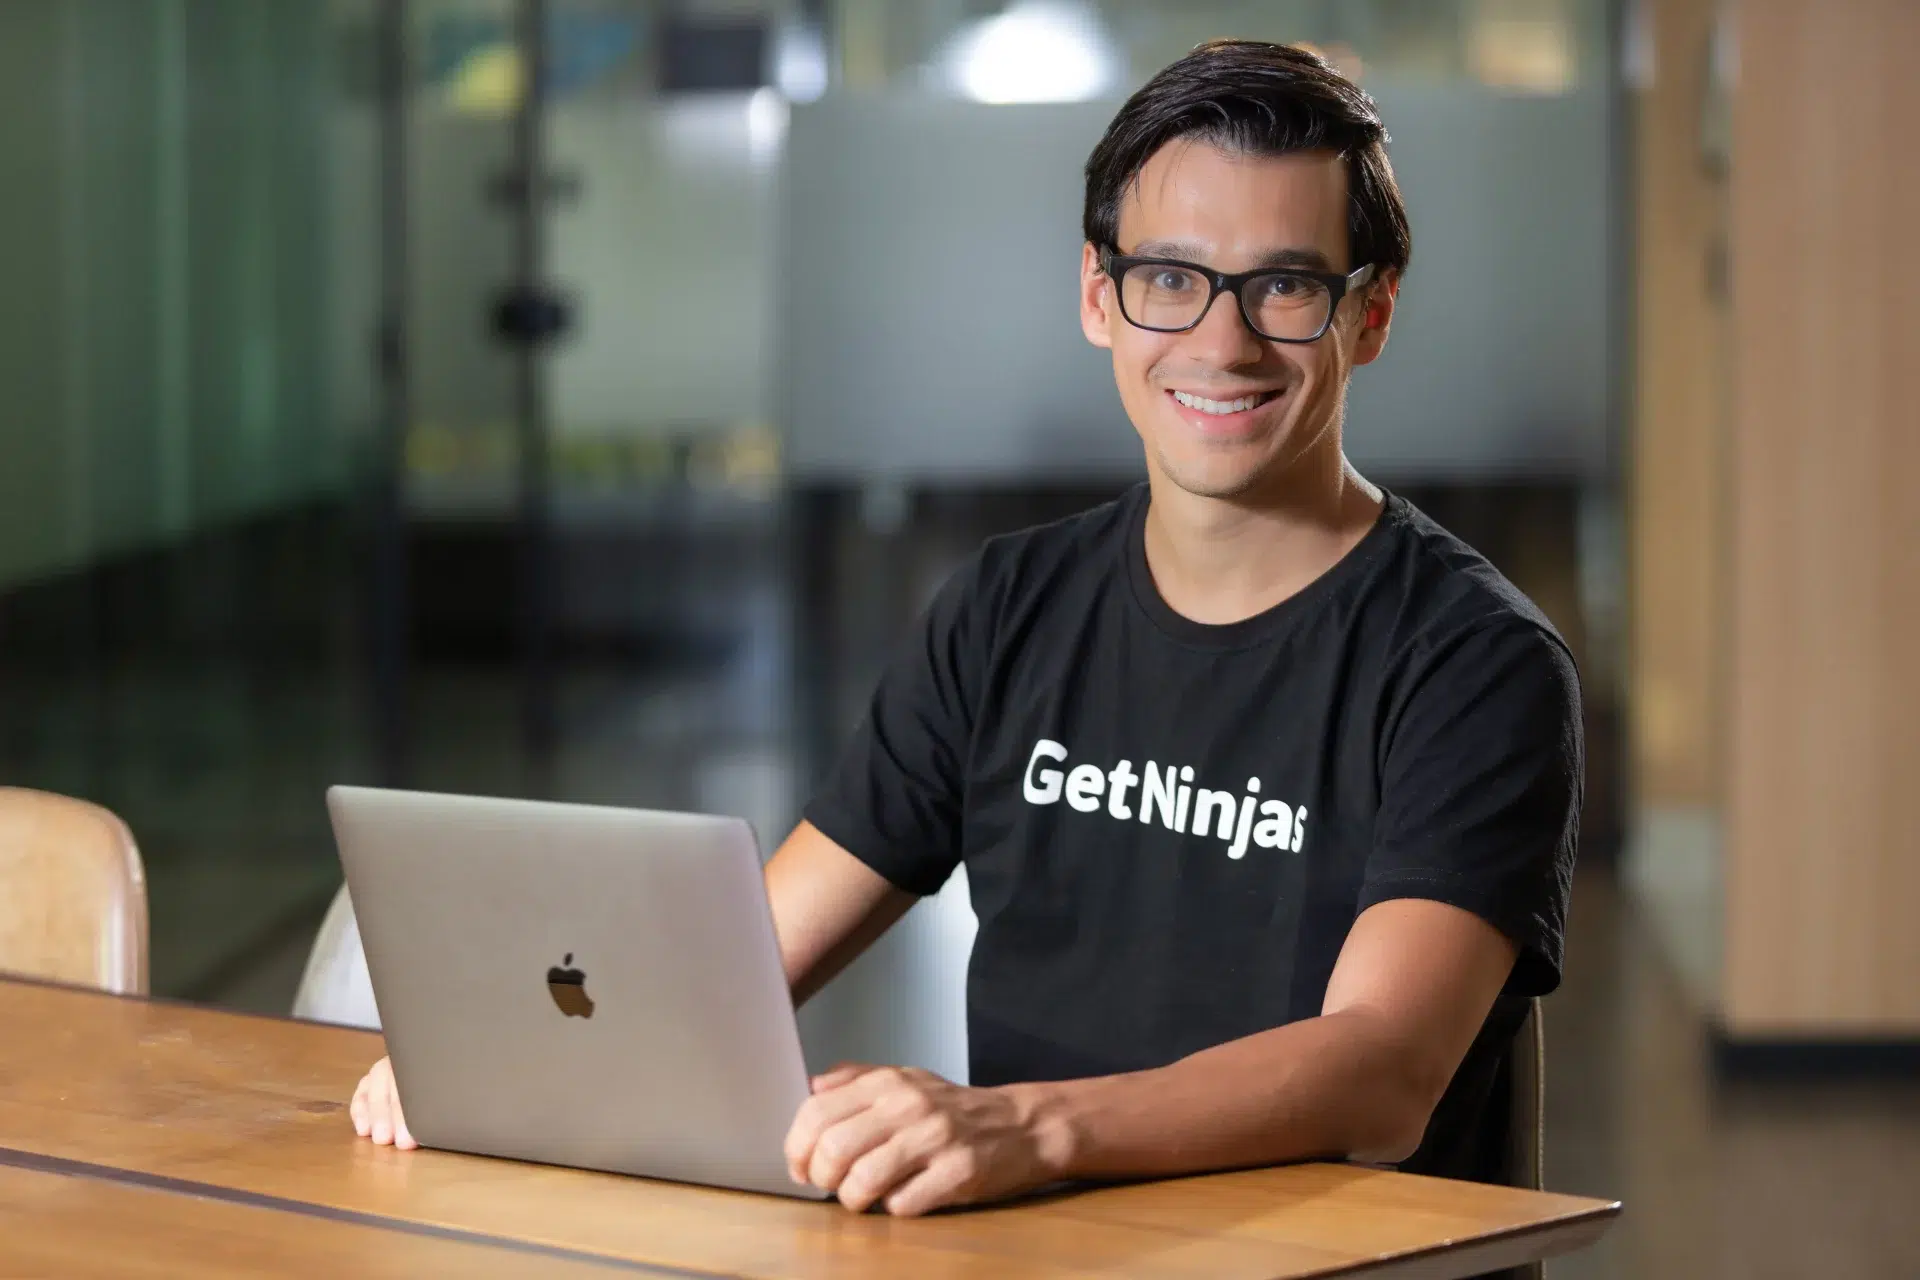 Foto do Eduardo L'Hotellier, CEO do GetNinjas, sentado em frente ao computadorure Capital na Headline, sorrindo enquanto